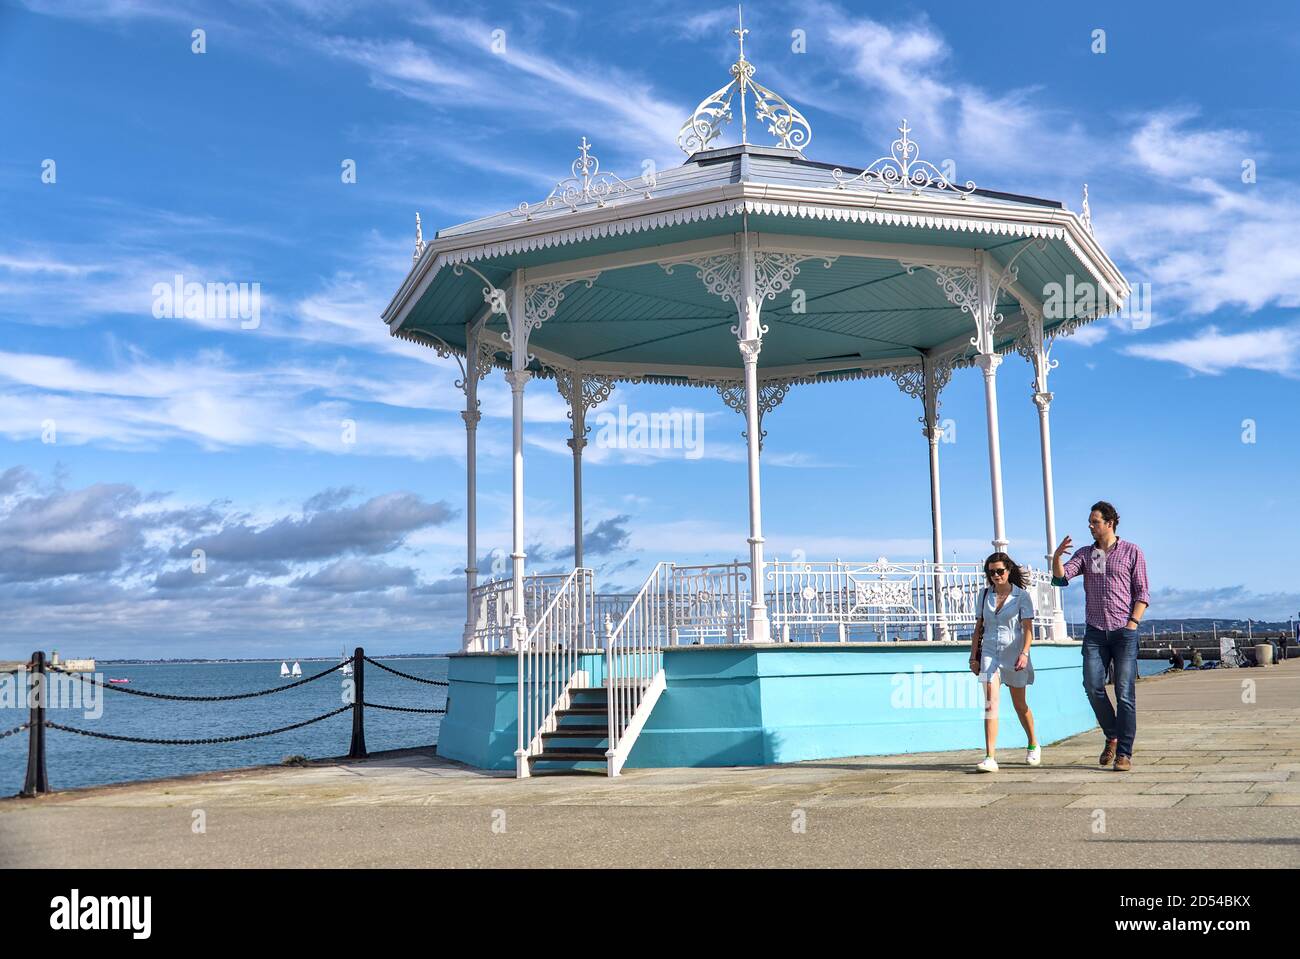 Dublino, Irlanda - 13 settembre 2020: Persone casuali che camminano al porto di East Pier Dun Laoghaire in una bella mattina di sole. Colori blu Foto Stock